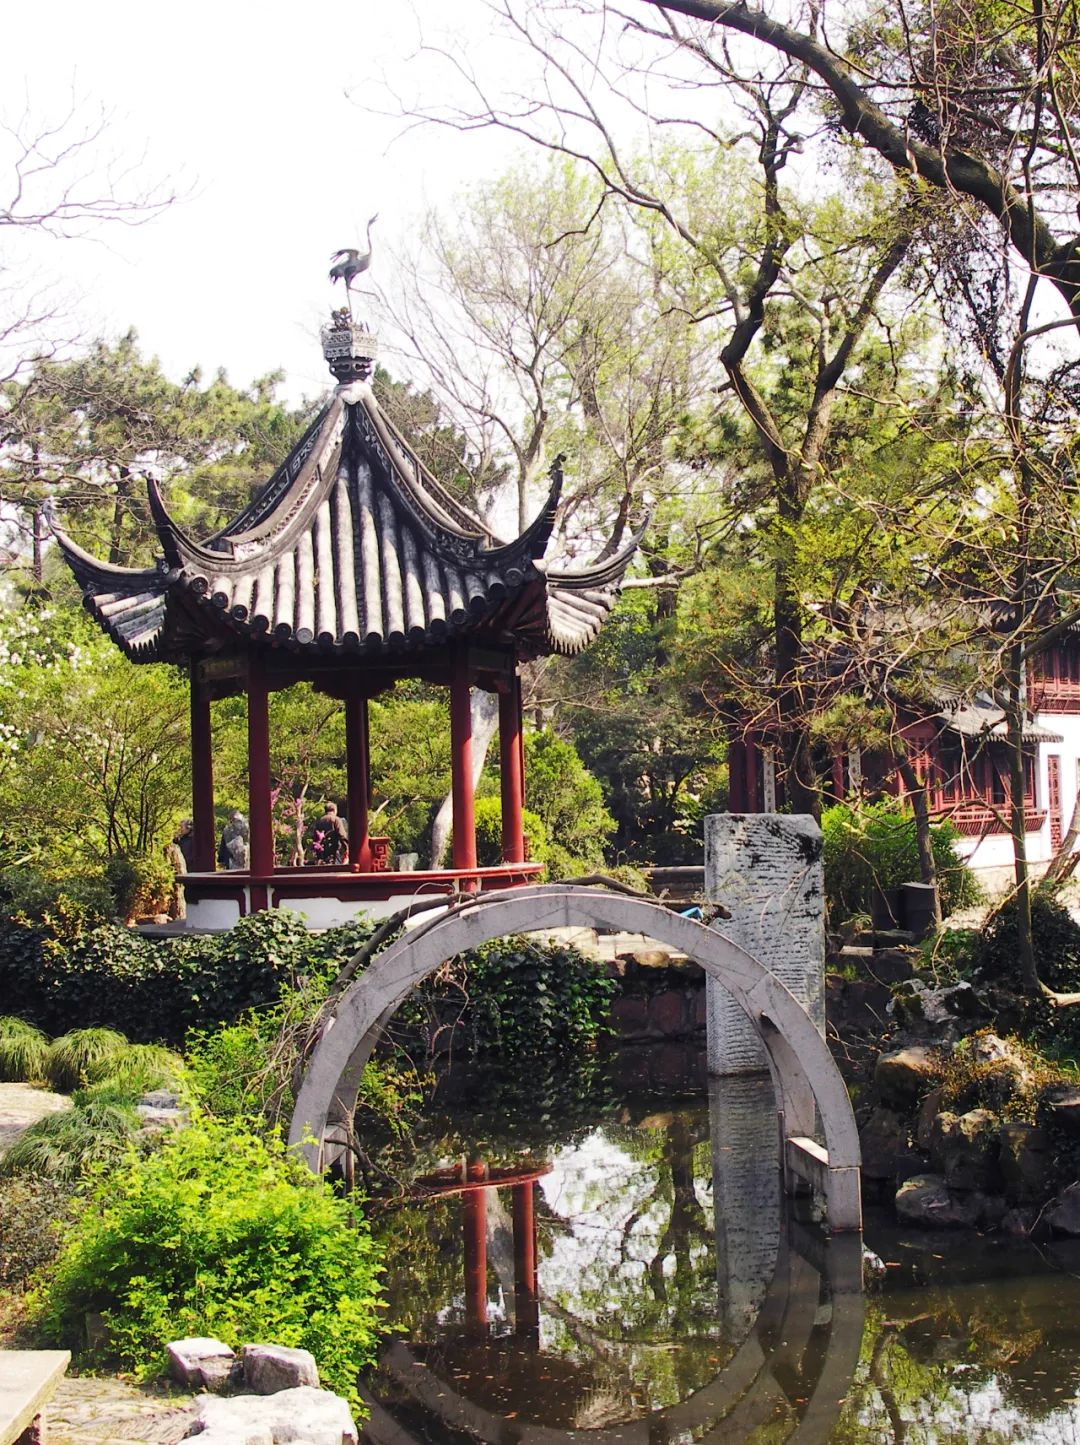 上海古猗园3月启动二期修缮,请注意游园安全